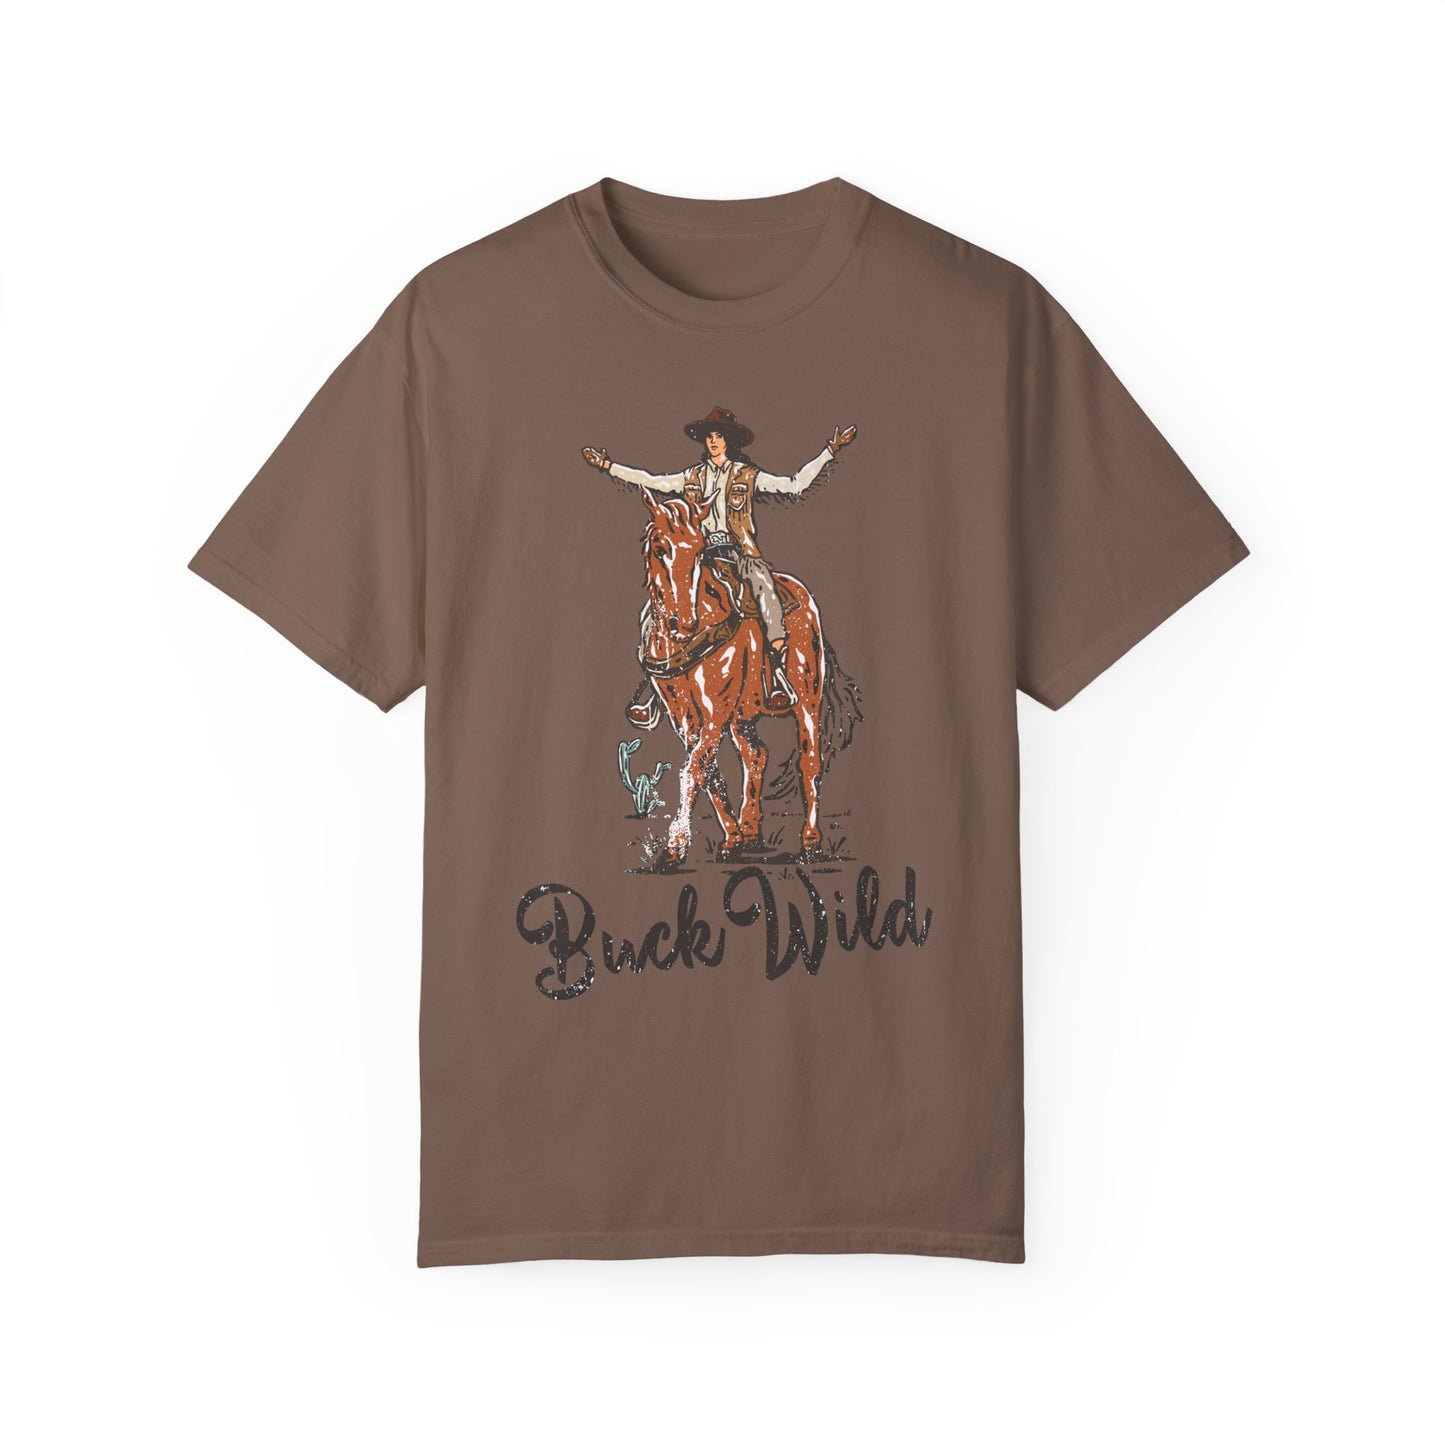 Buck Wild, Western Comfort Colors T-shirt